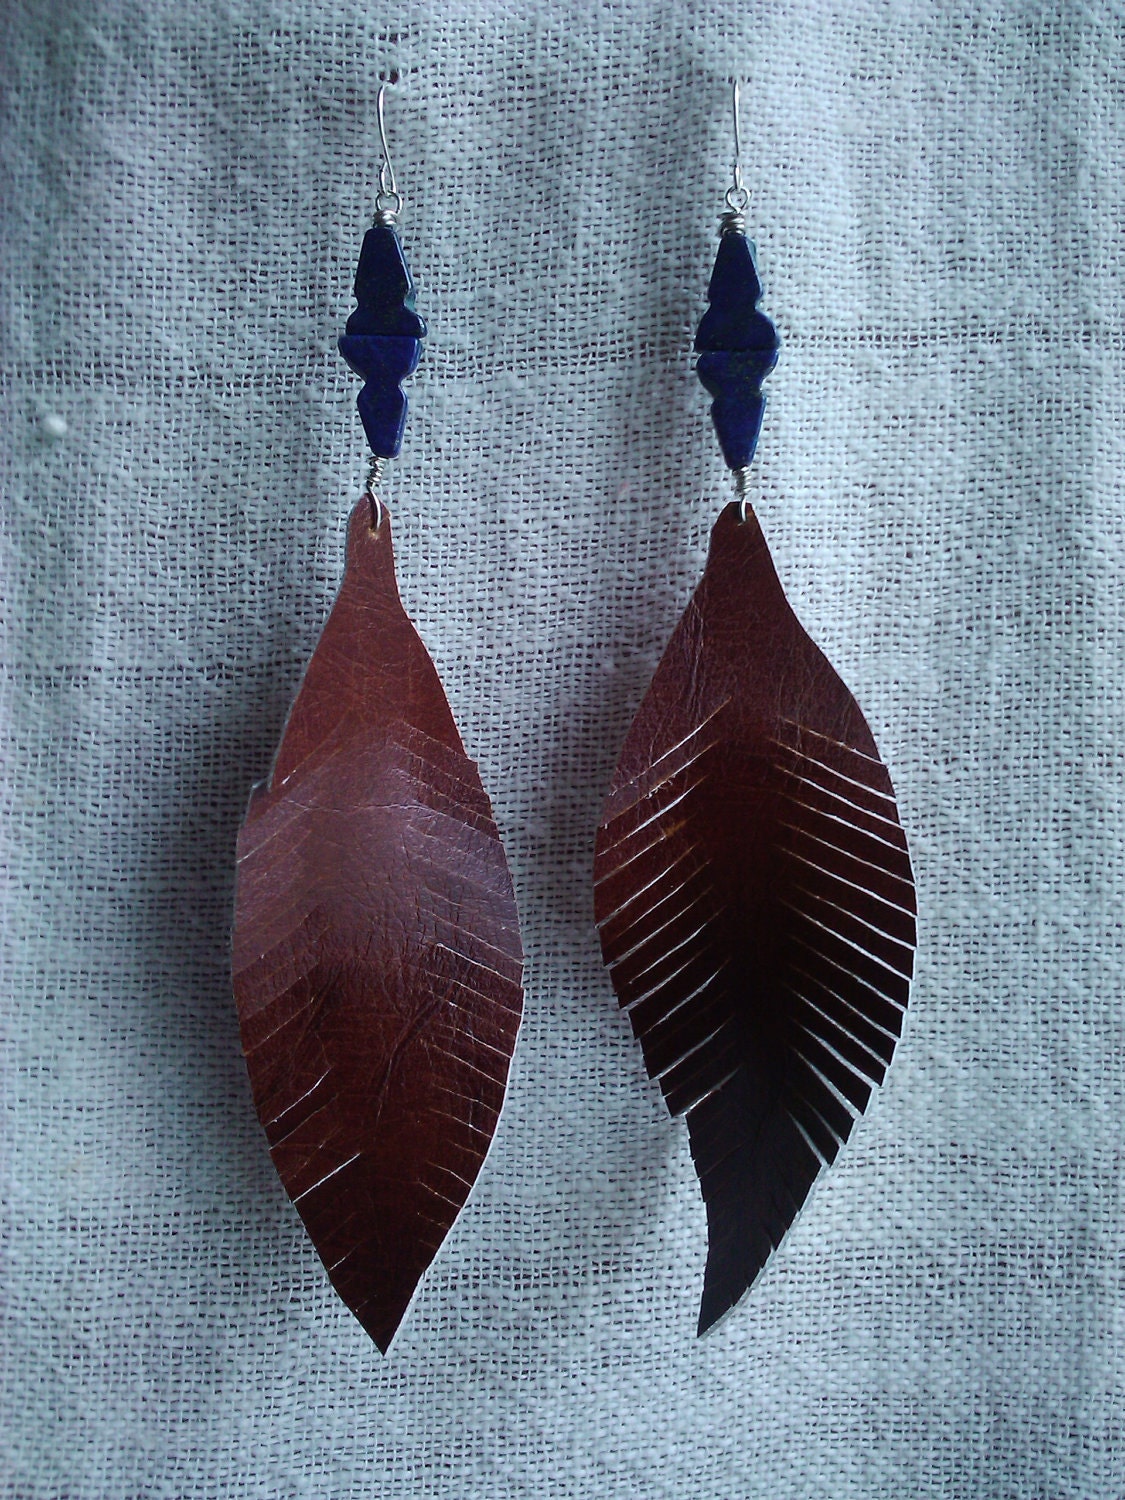 LaPaz Earrings (faux leather)